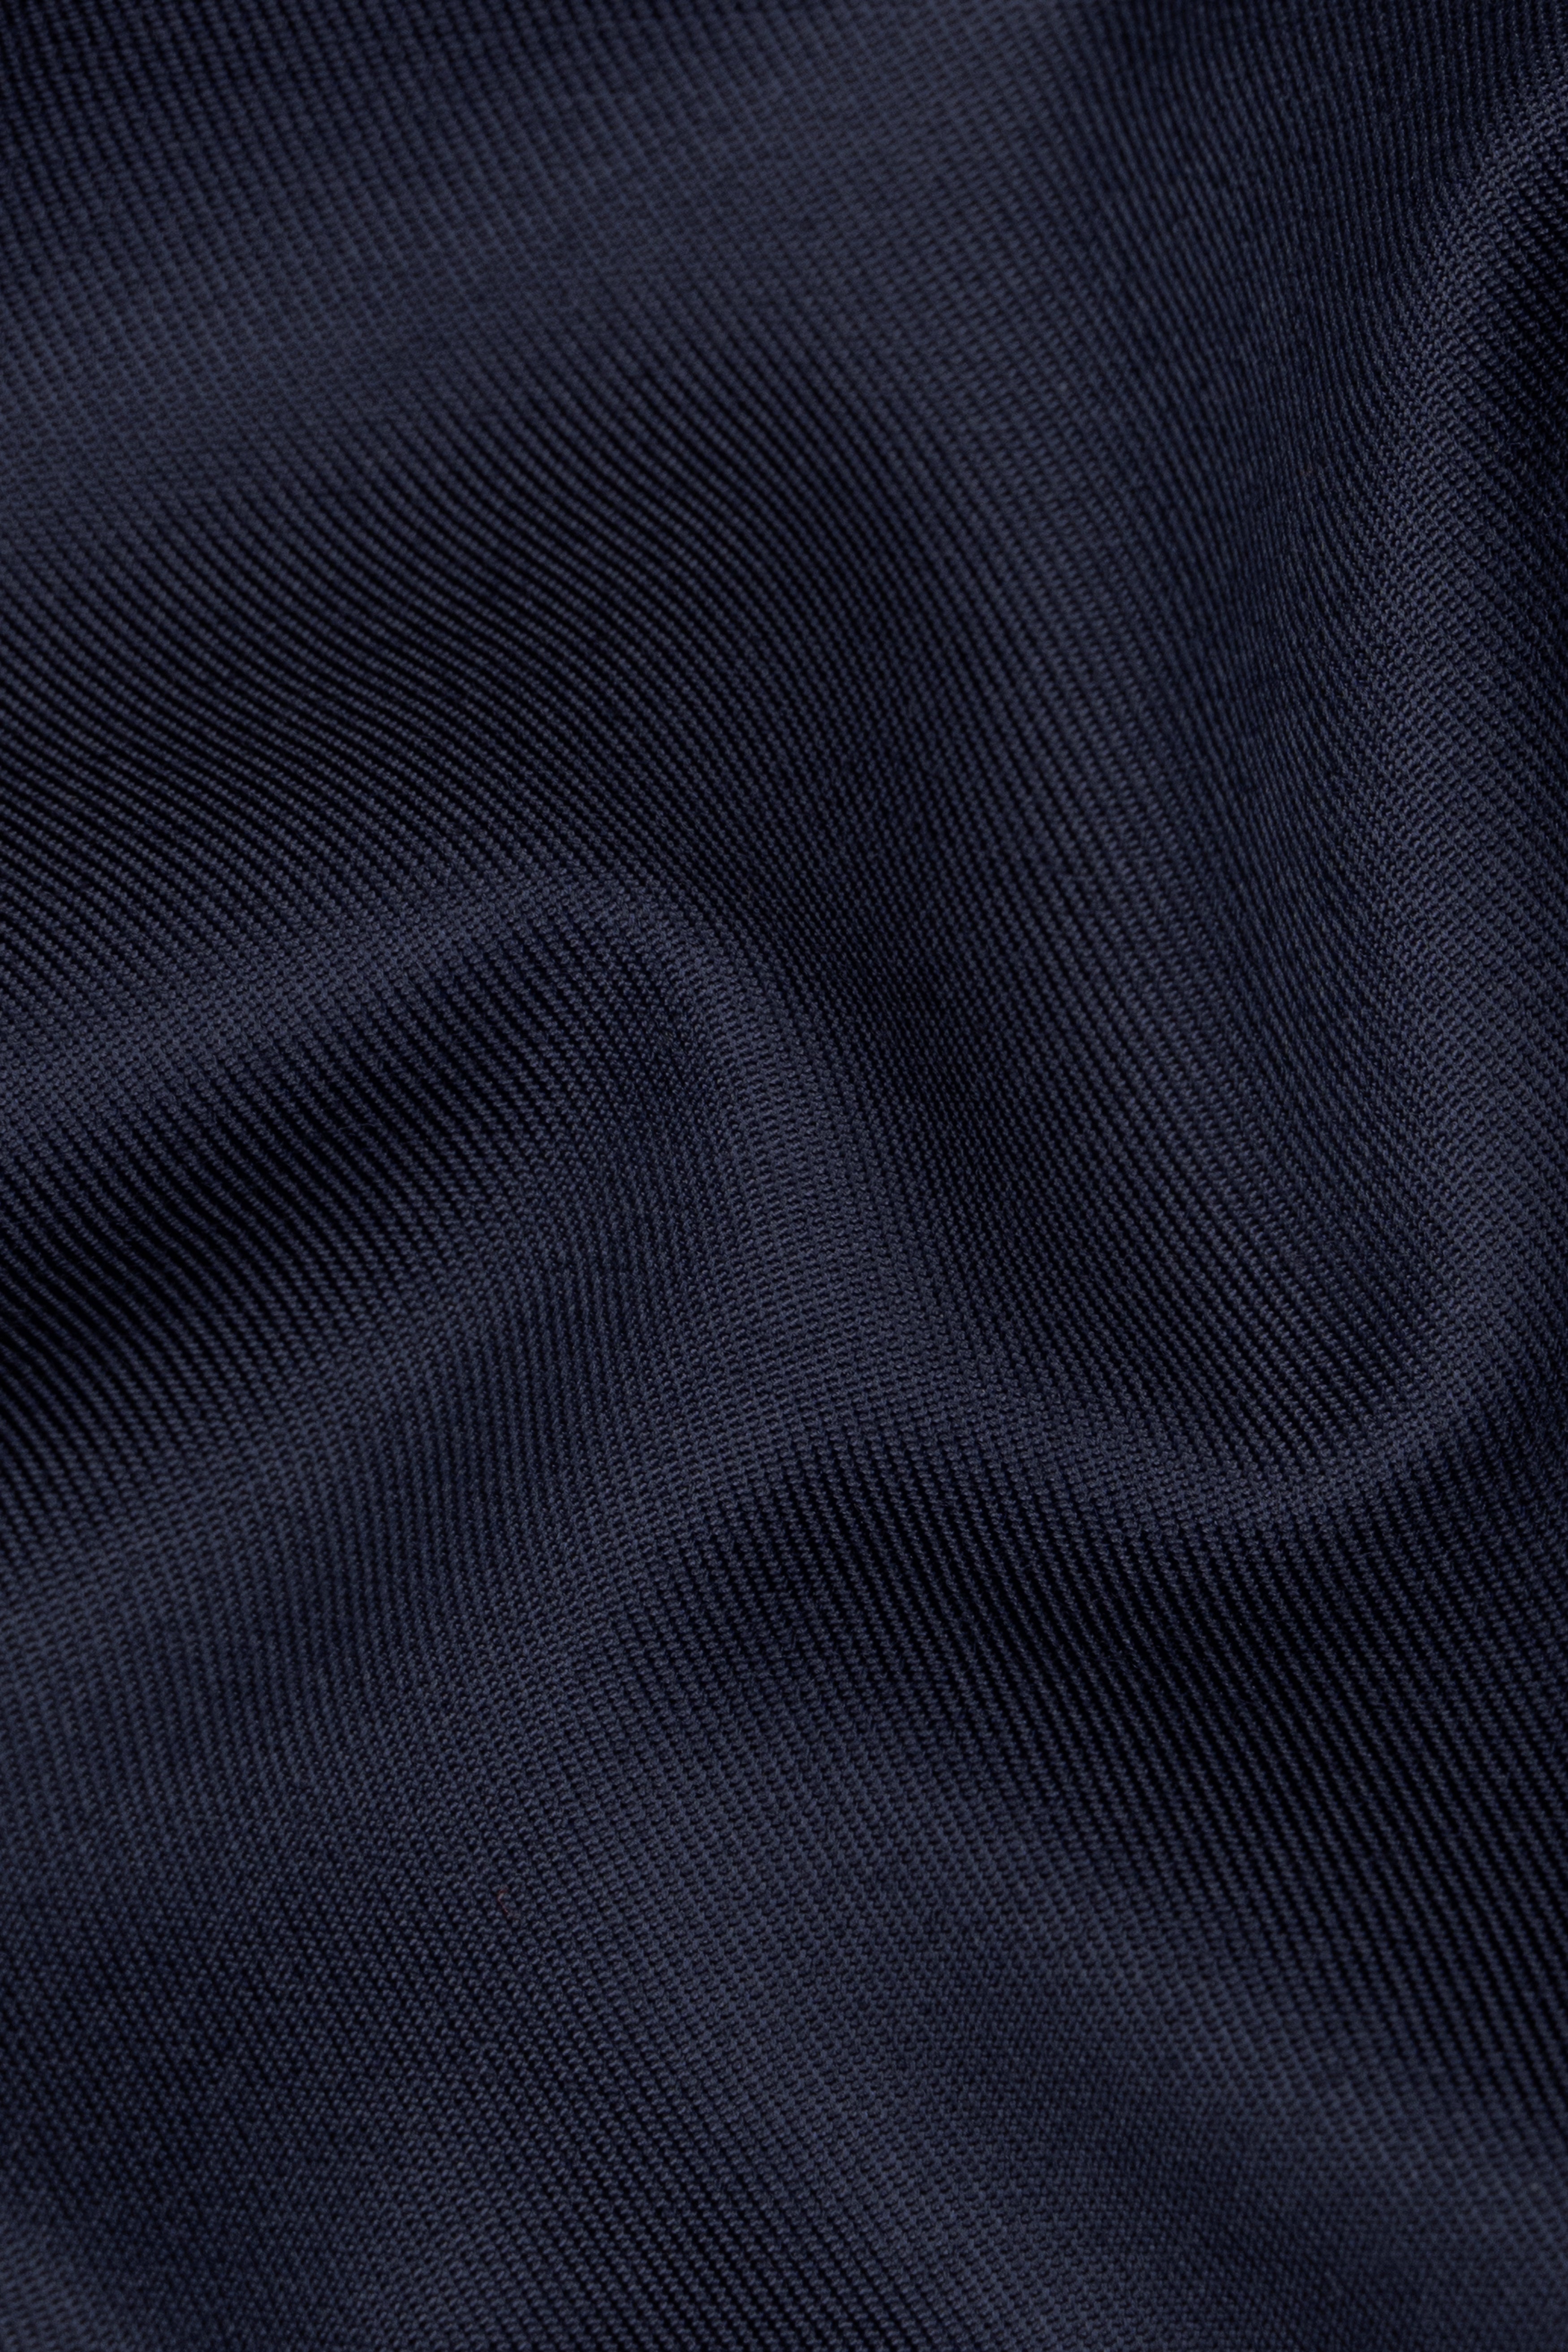 Vulcan Blue Plain Solid Wool Blend Waistcoat